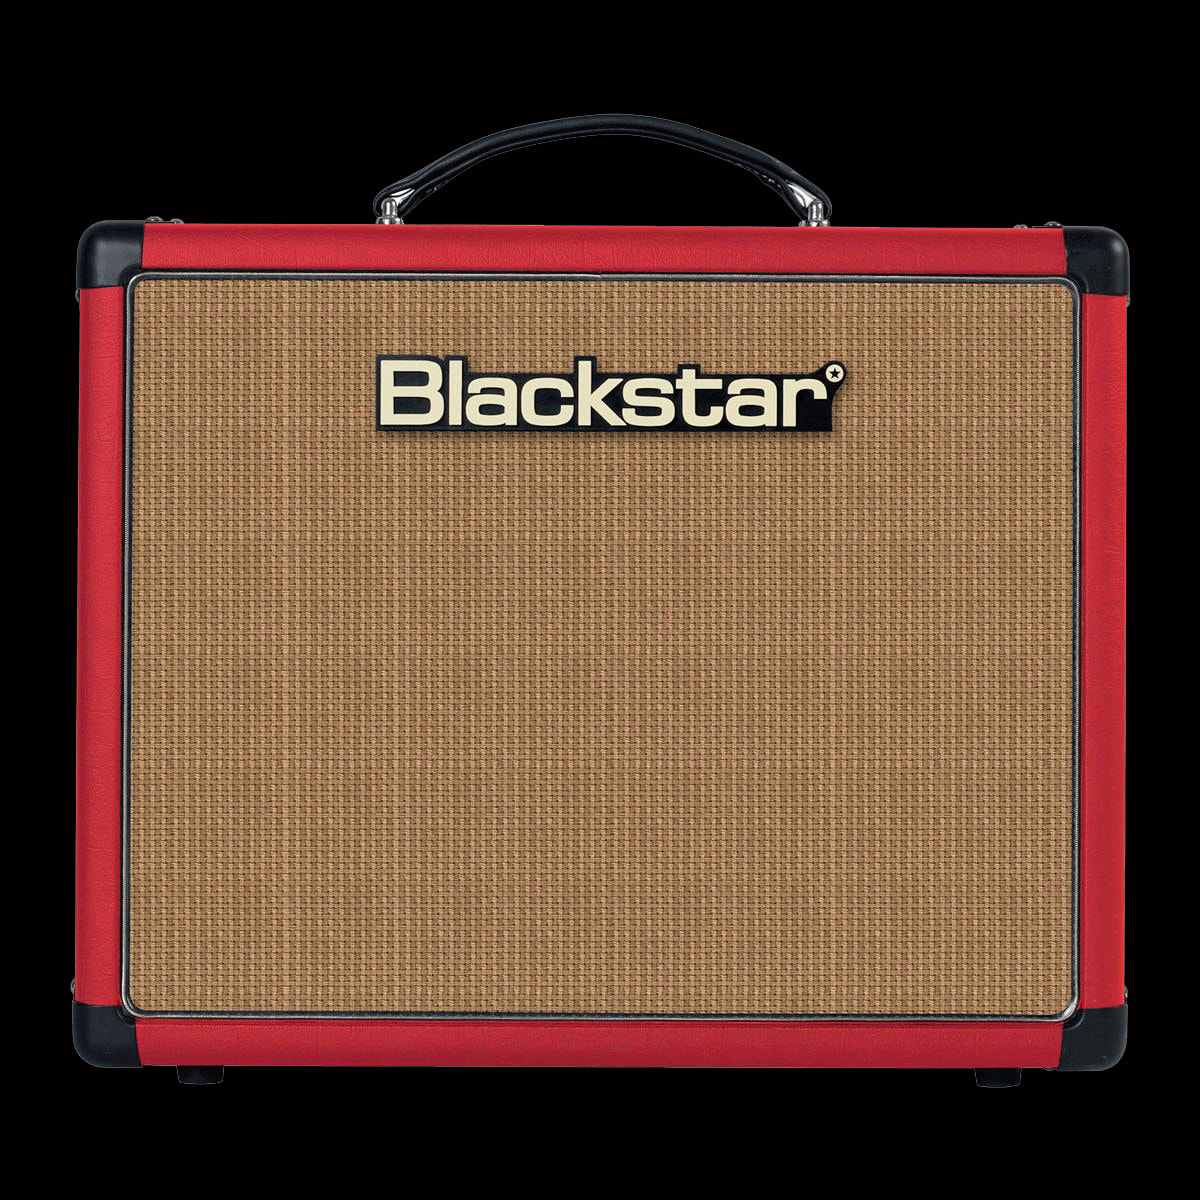 DCFY Guitar Amplifier Cover for Blackstar HT-5 HT-5R Amp Nylon